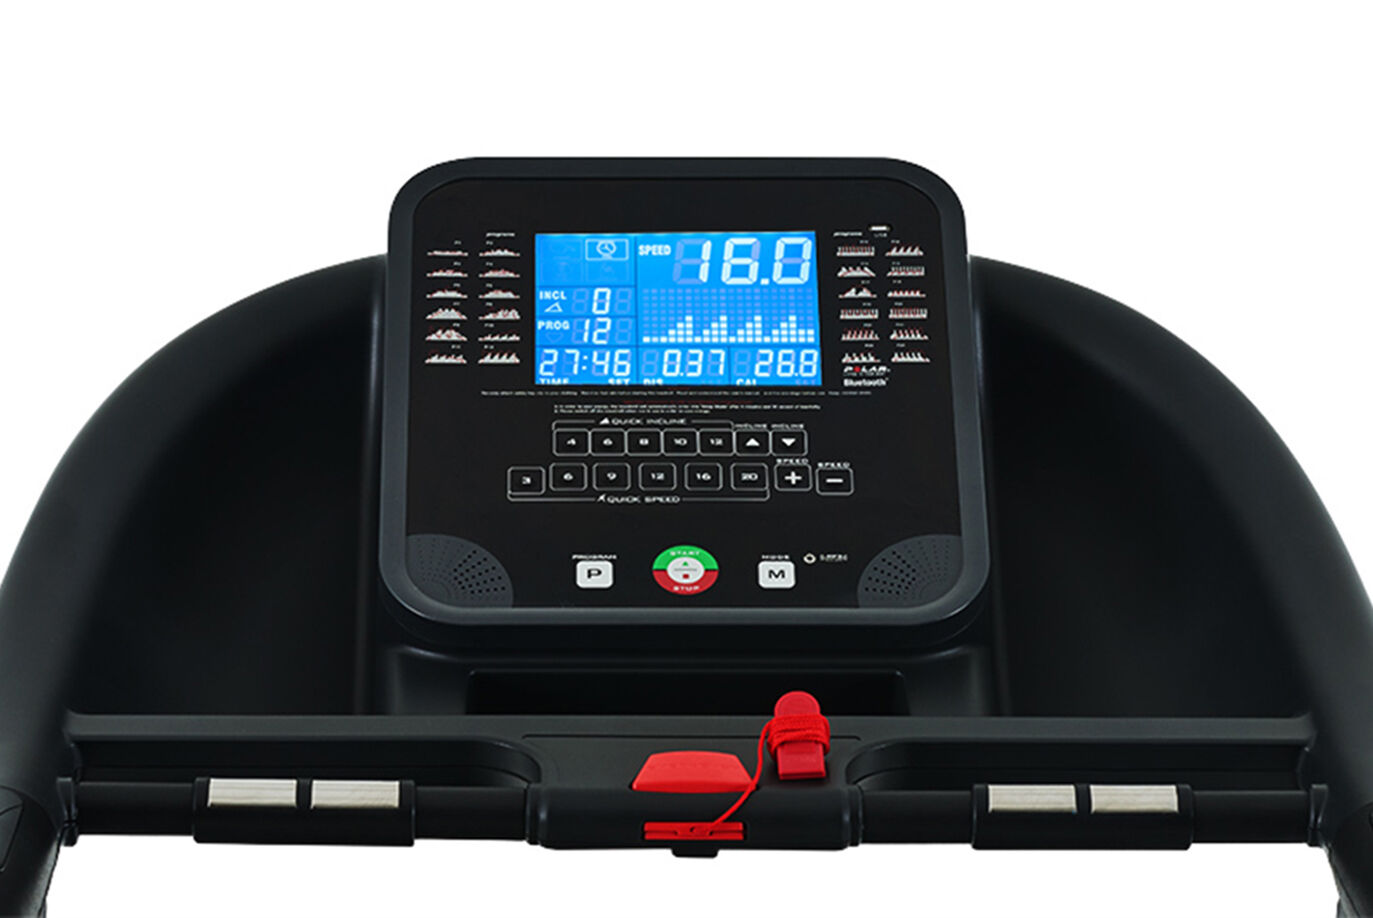 Gym Treadmill Monitor